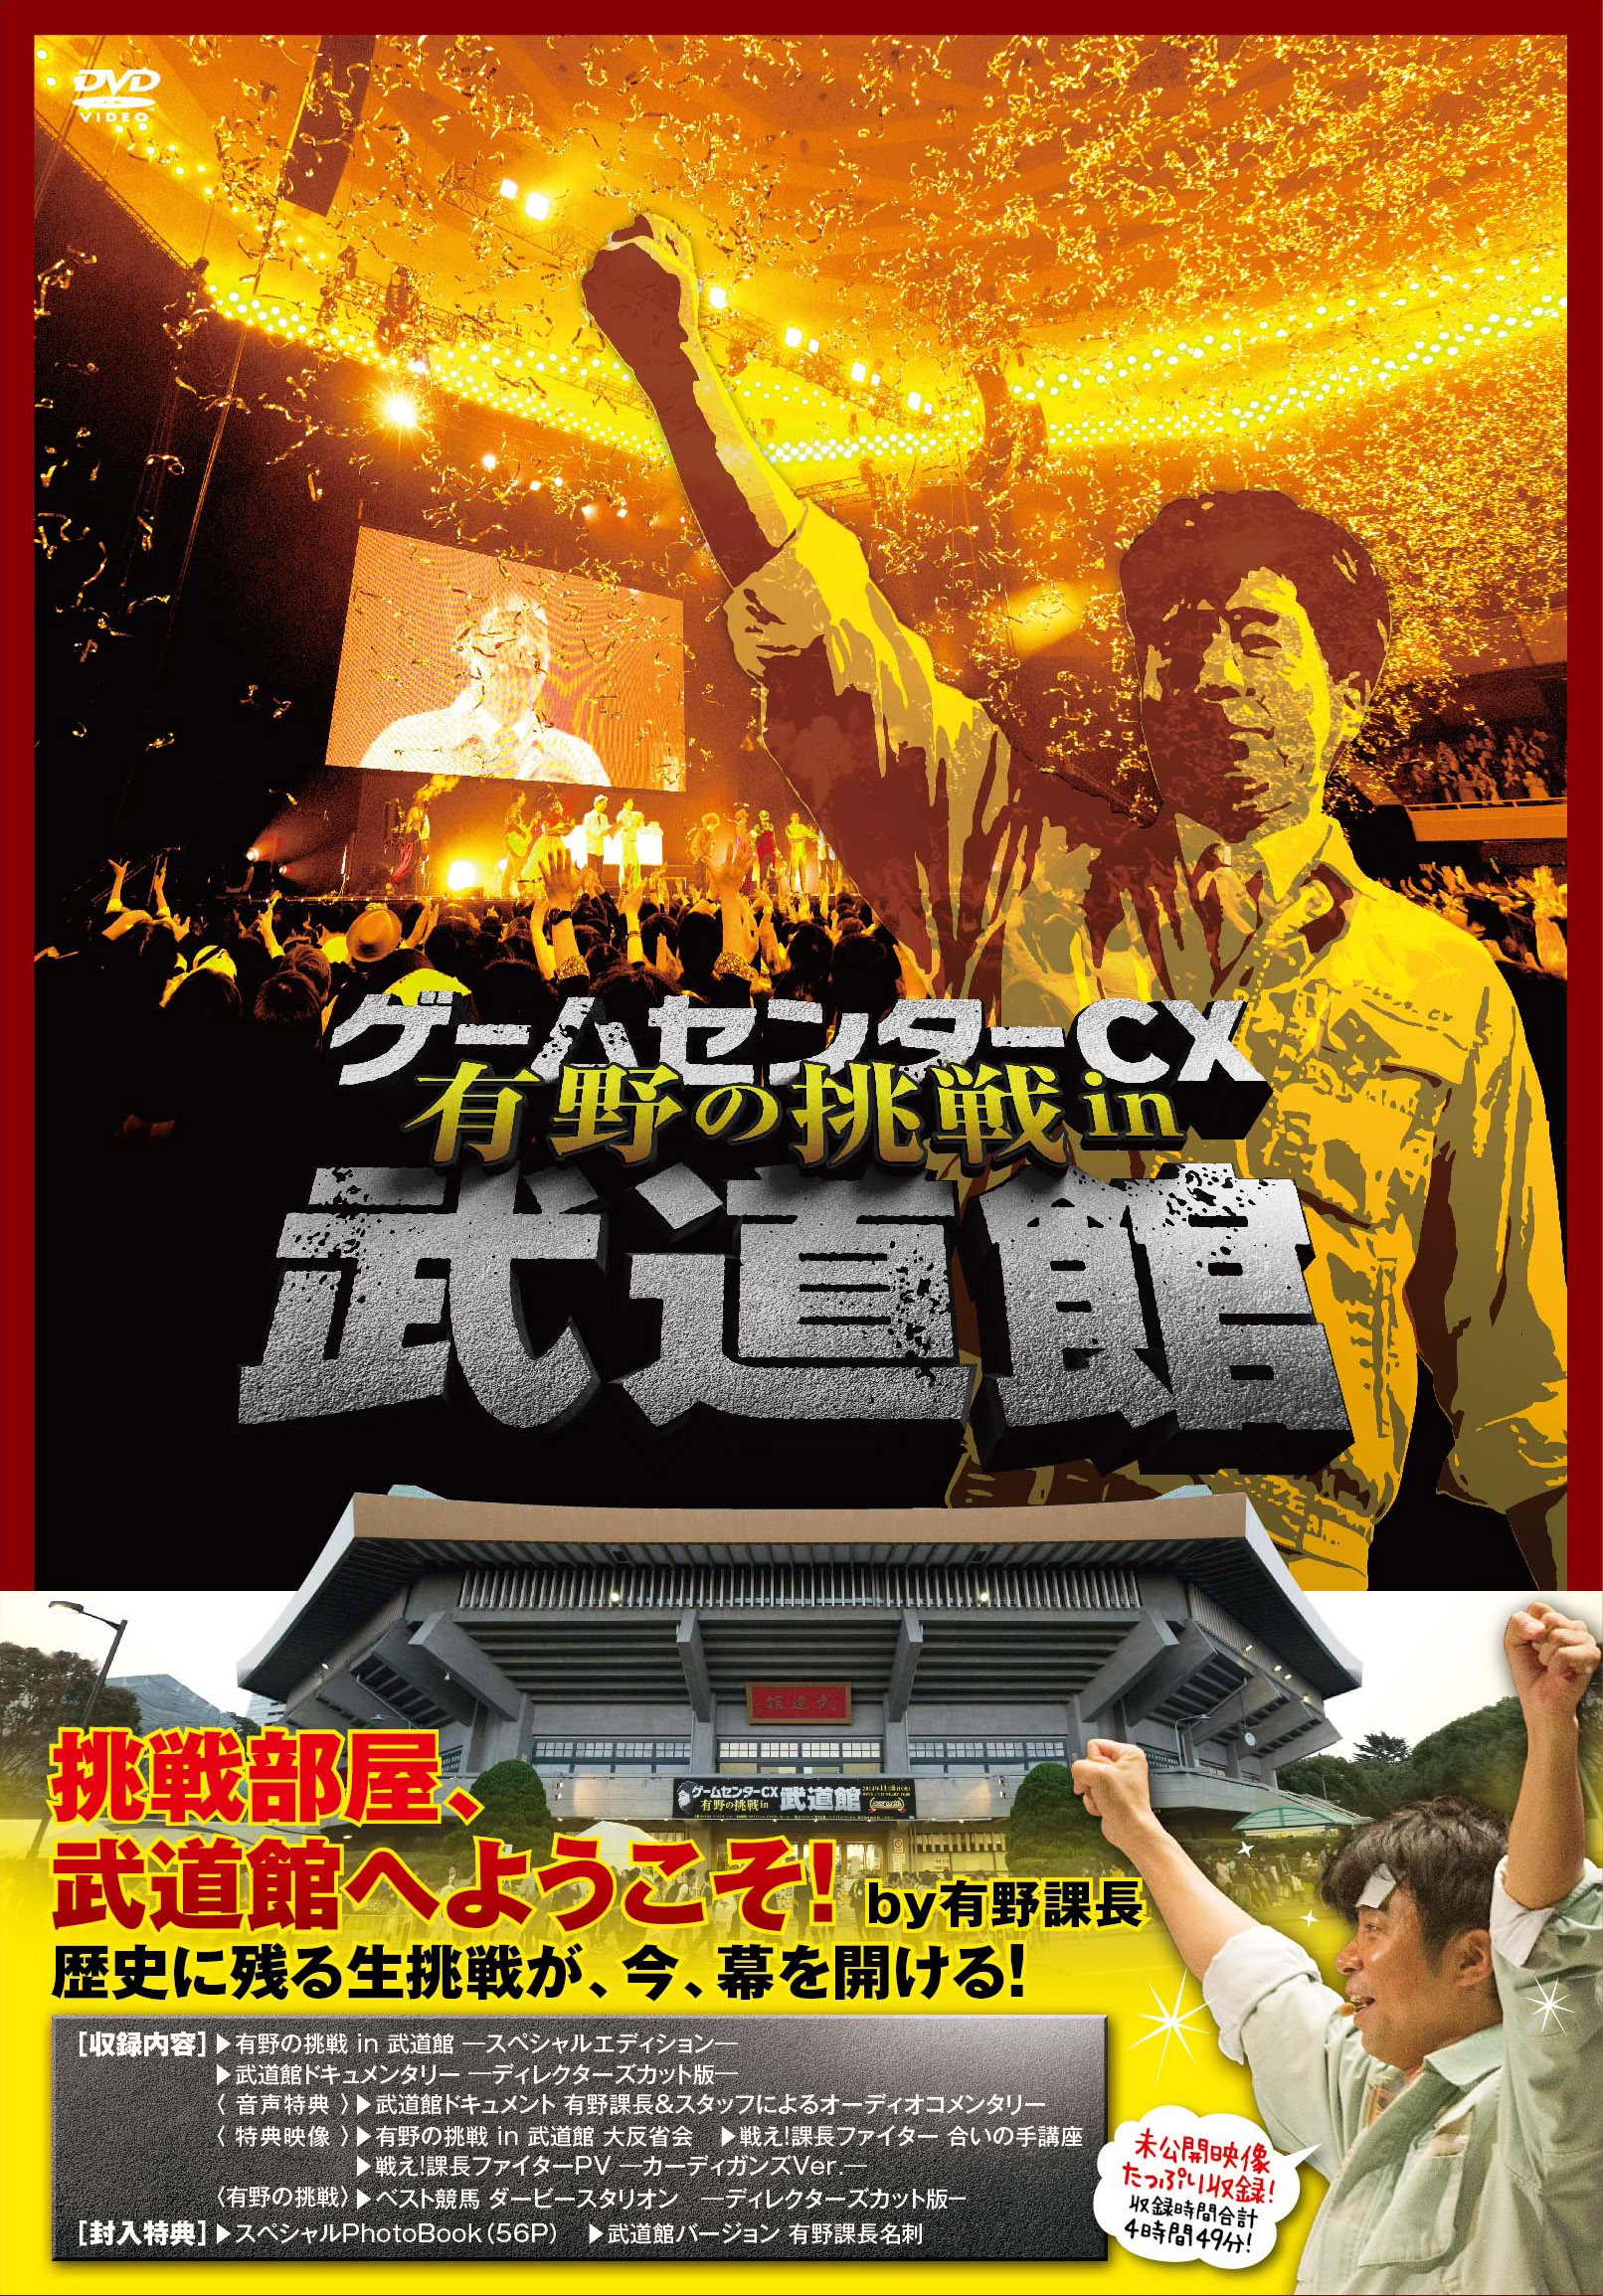 『ゲームセンターCX 有野の挑戦 in 武道館』DVD発売決定